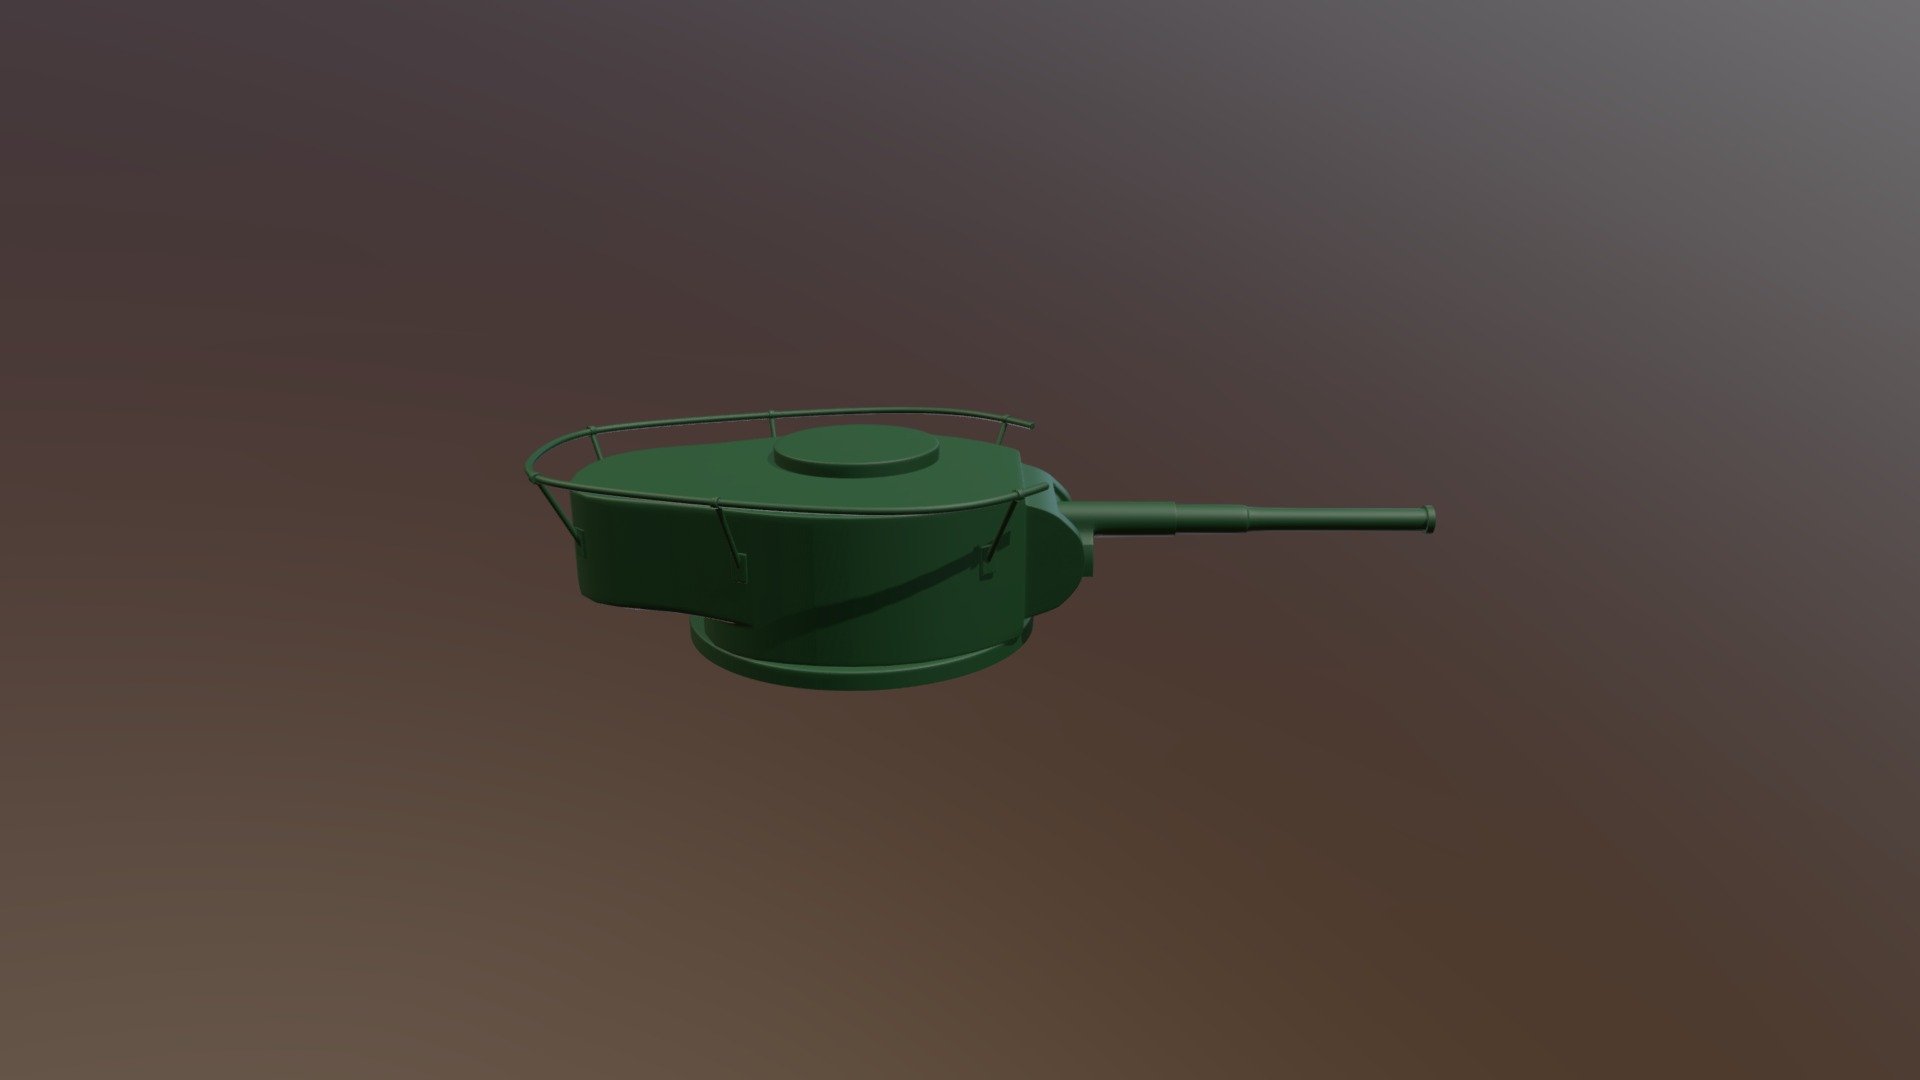 T-26  tank  turret